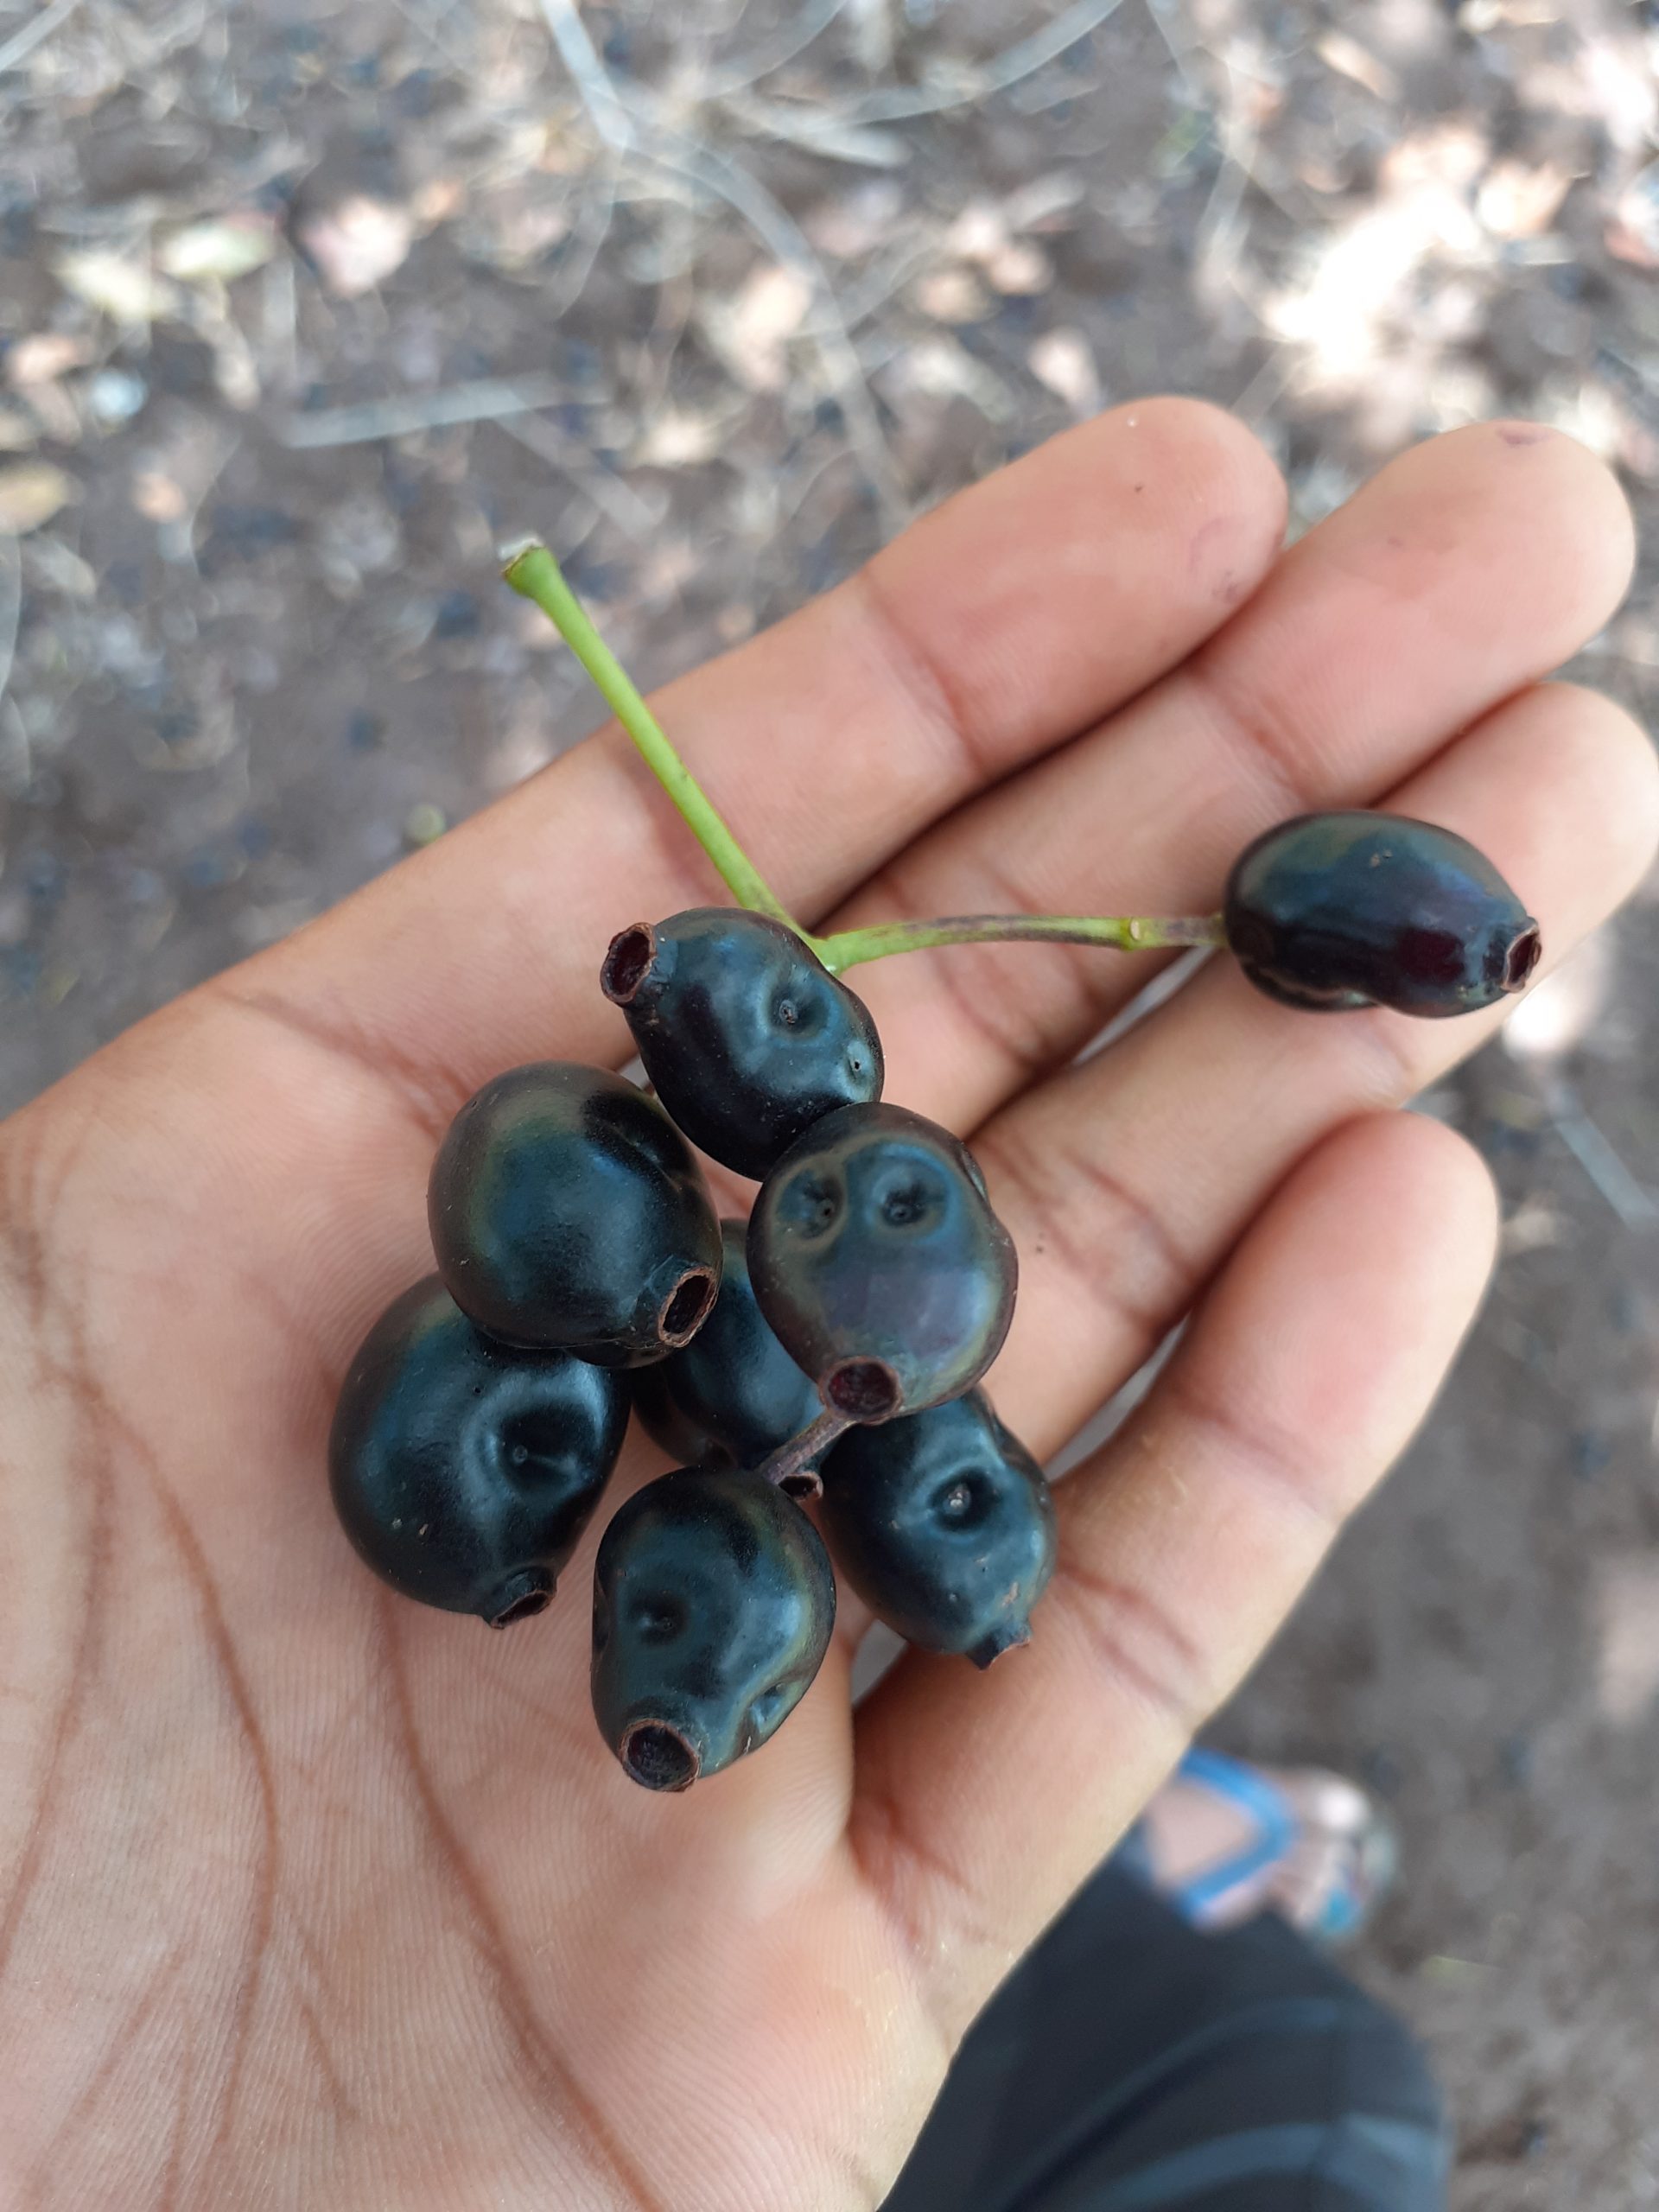 Black berries in hand